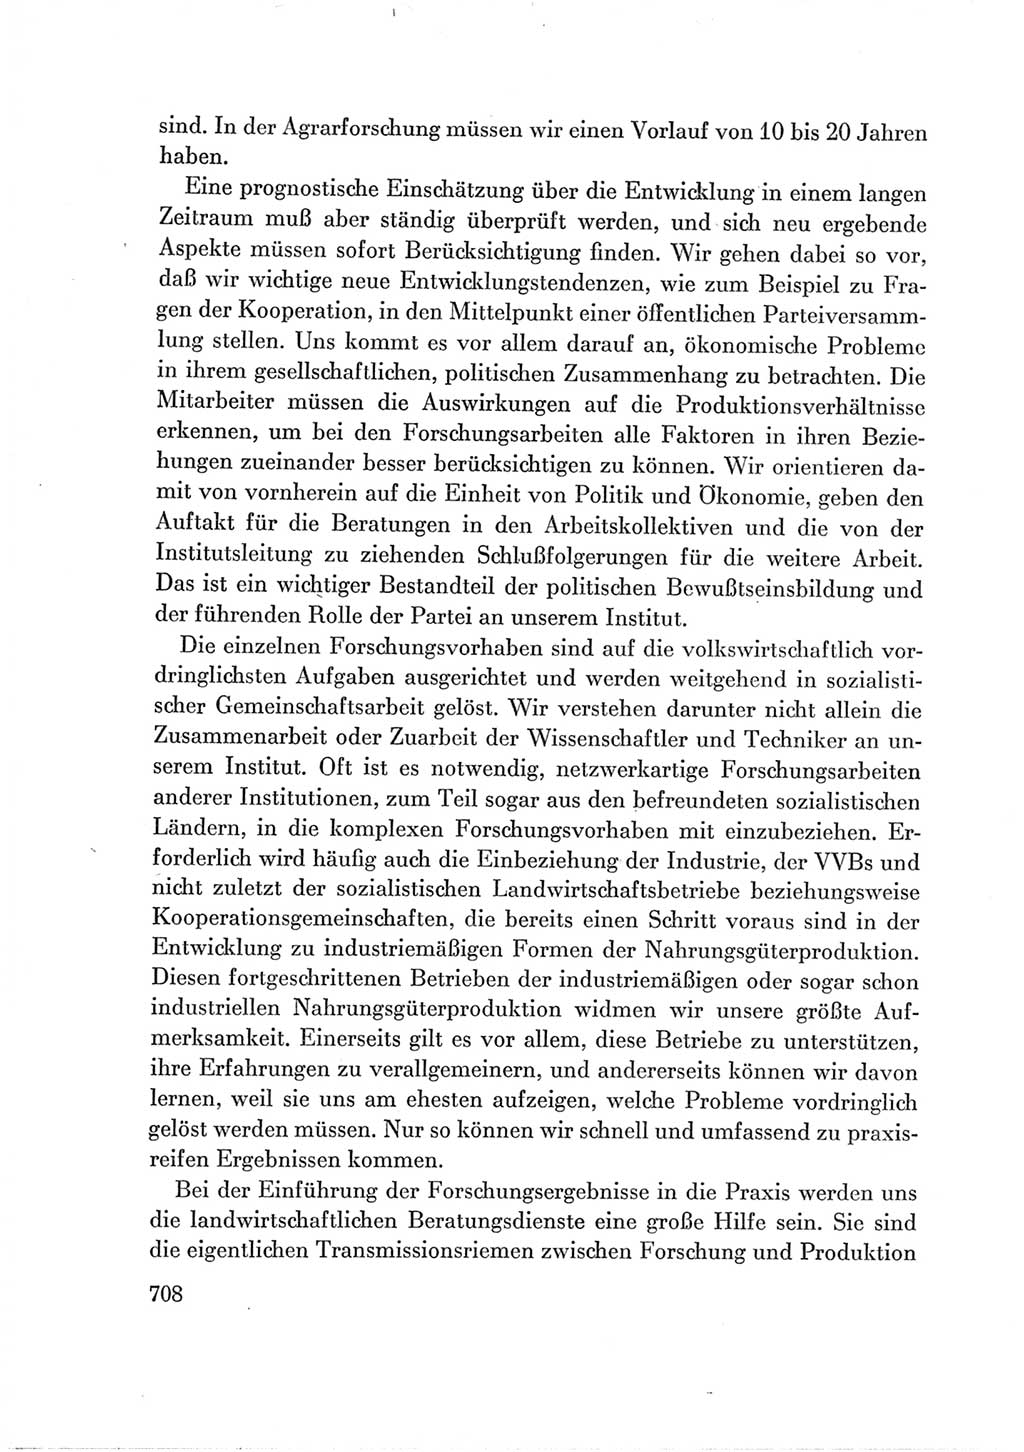 Protokoll der Verhandlungen des Ⅶ. Parteitages der Sozialistischen Einheitspartei Deutschlands (SED) [Deutsche Demokratische Republik (DDR)] 1967, Band Ⅲ, Seite 708 (Prot. Verh. Ⅶ. PT SED DDR 1967, Bd. Ⅲ, S. 708)